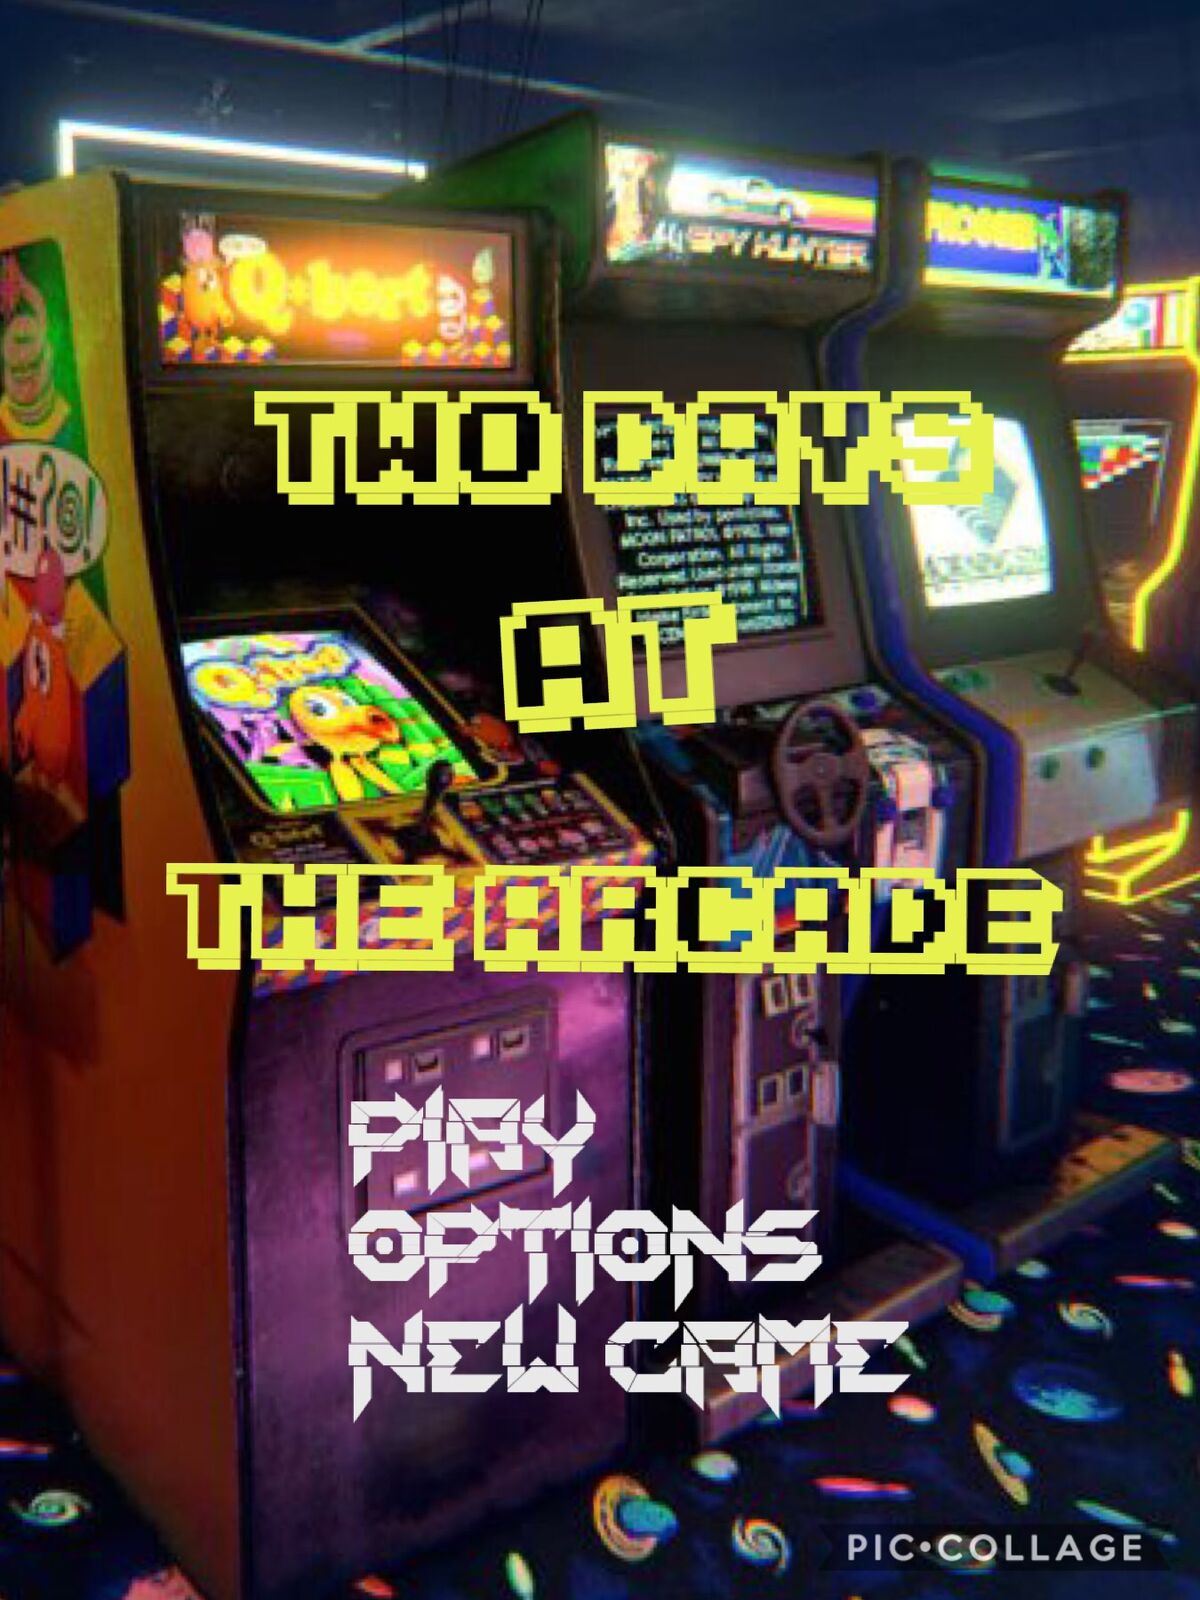 Found Joy of creation Freddy on arcade machine : r/GameTheorists